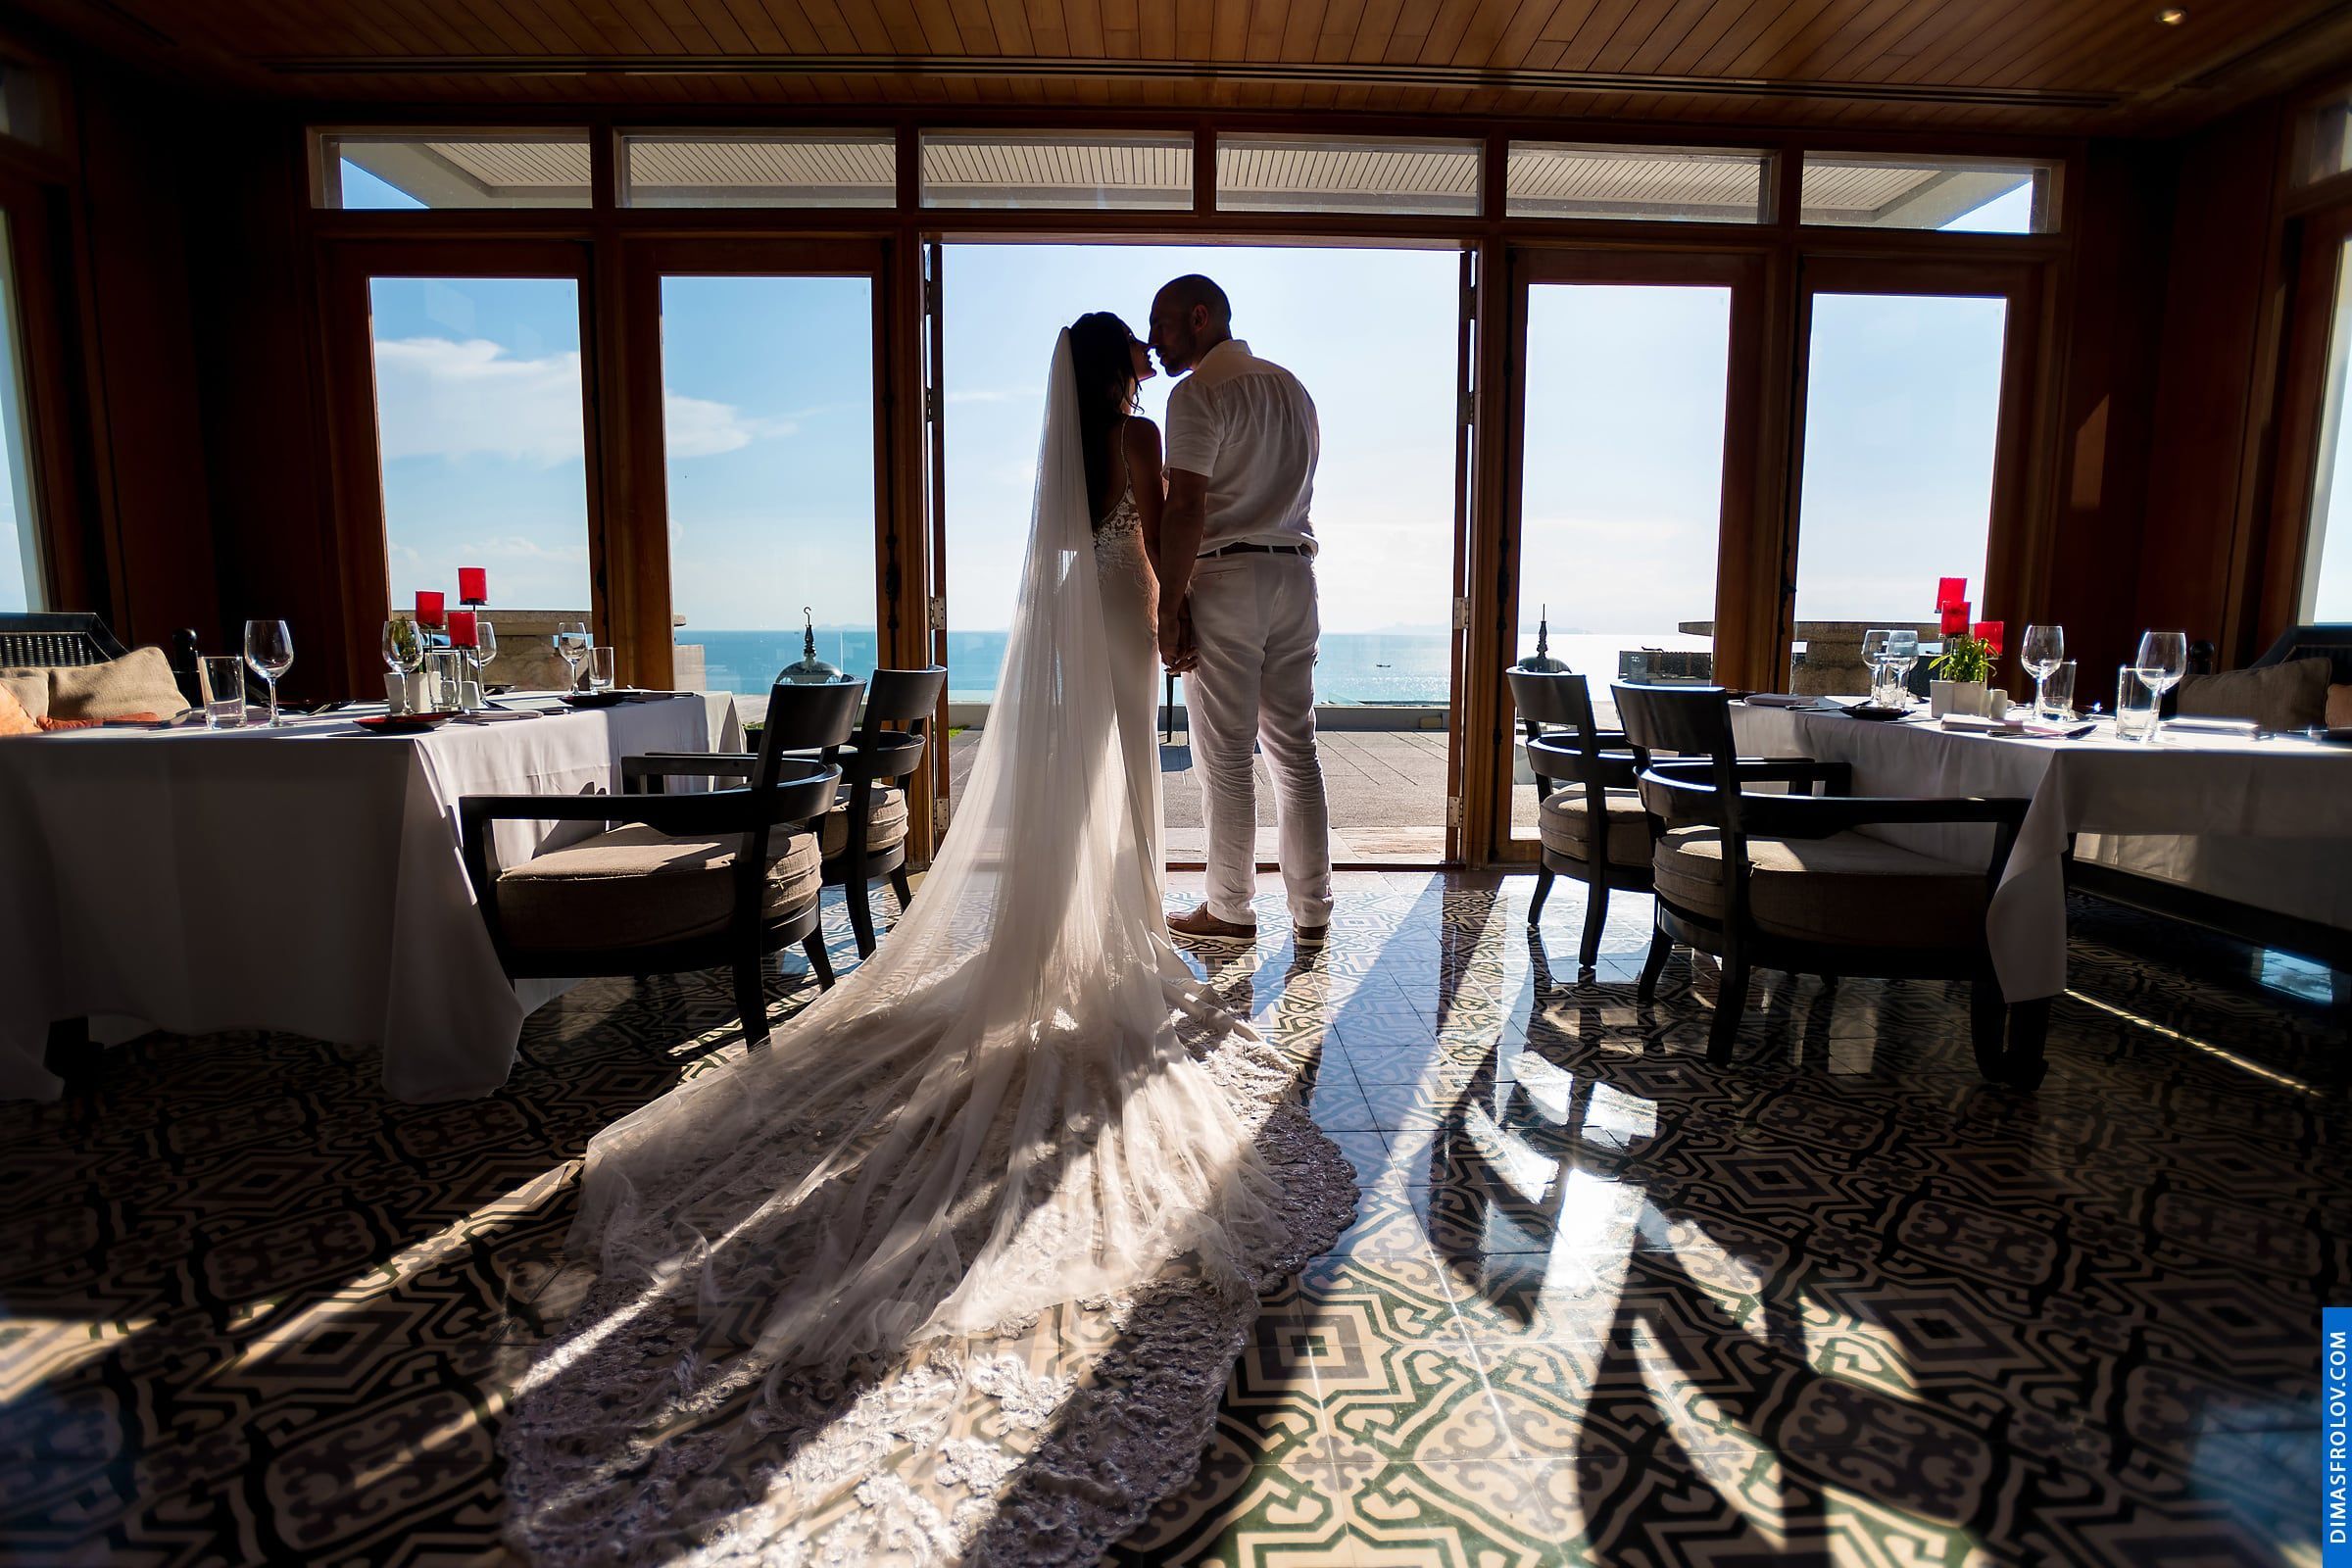 พิธีแต่งงาน ณ โรงแรมอินเตอร์คอนติเนนตัล เกาะสมุย - Natalie & Simon. บาทต่อภาพ 48198 (2023-05-04 03:54:37)